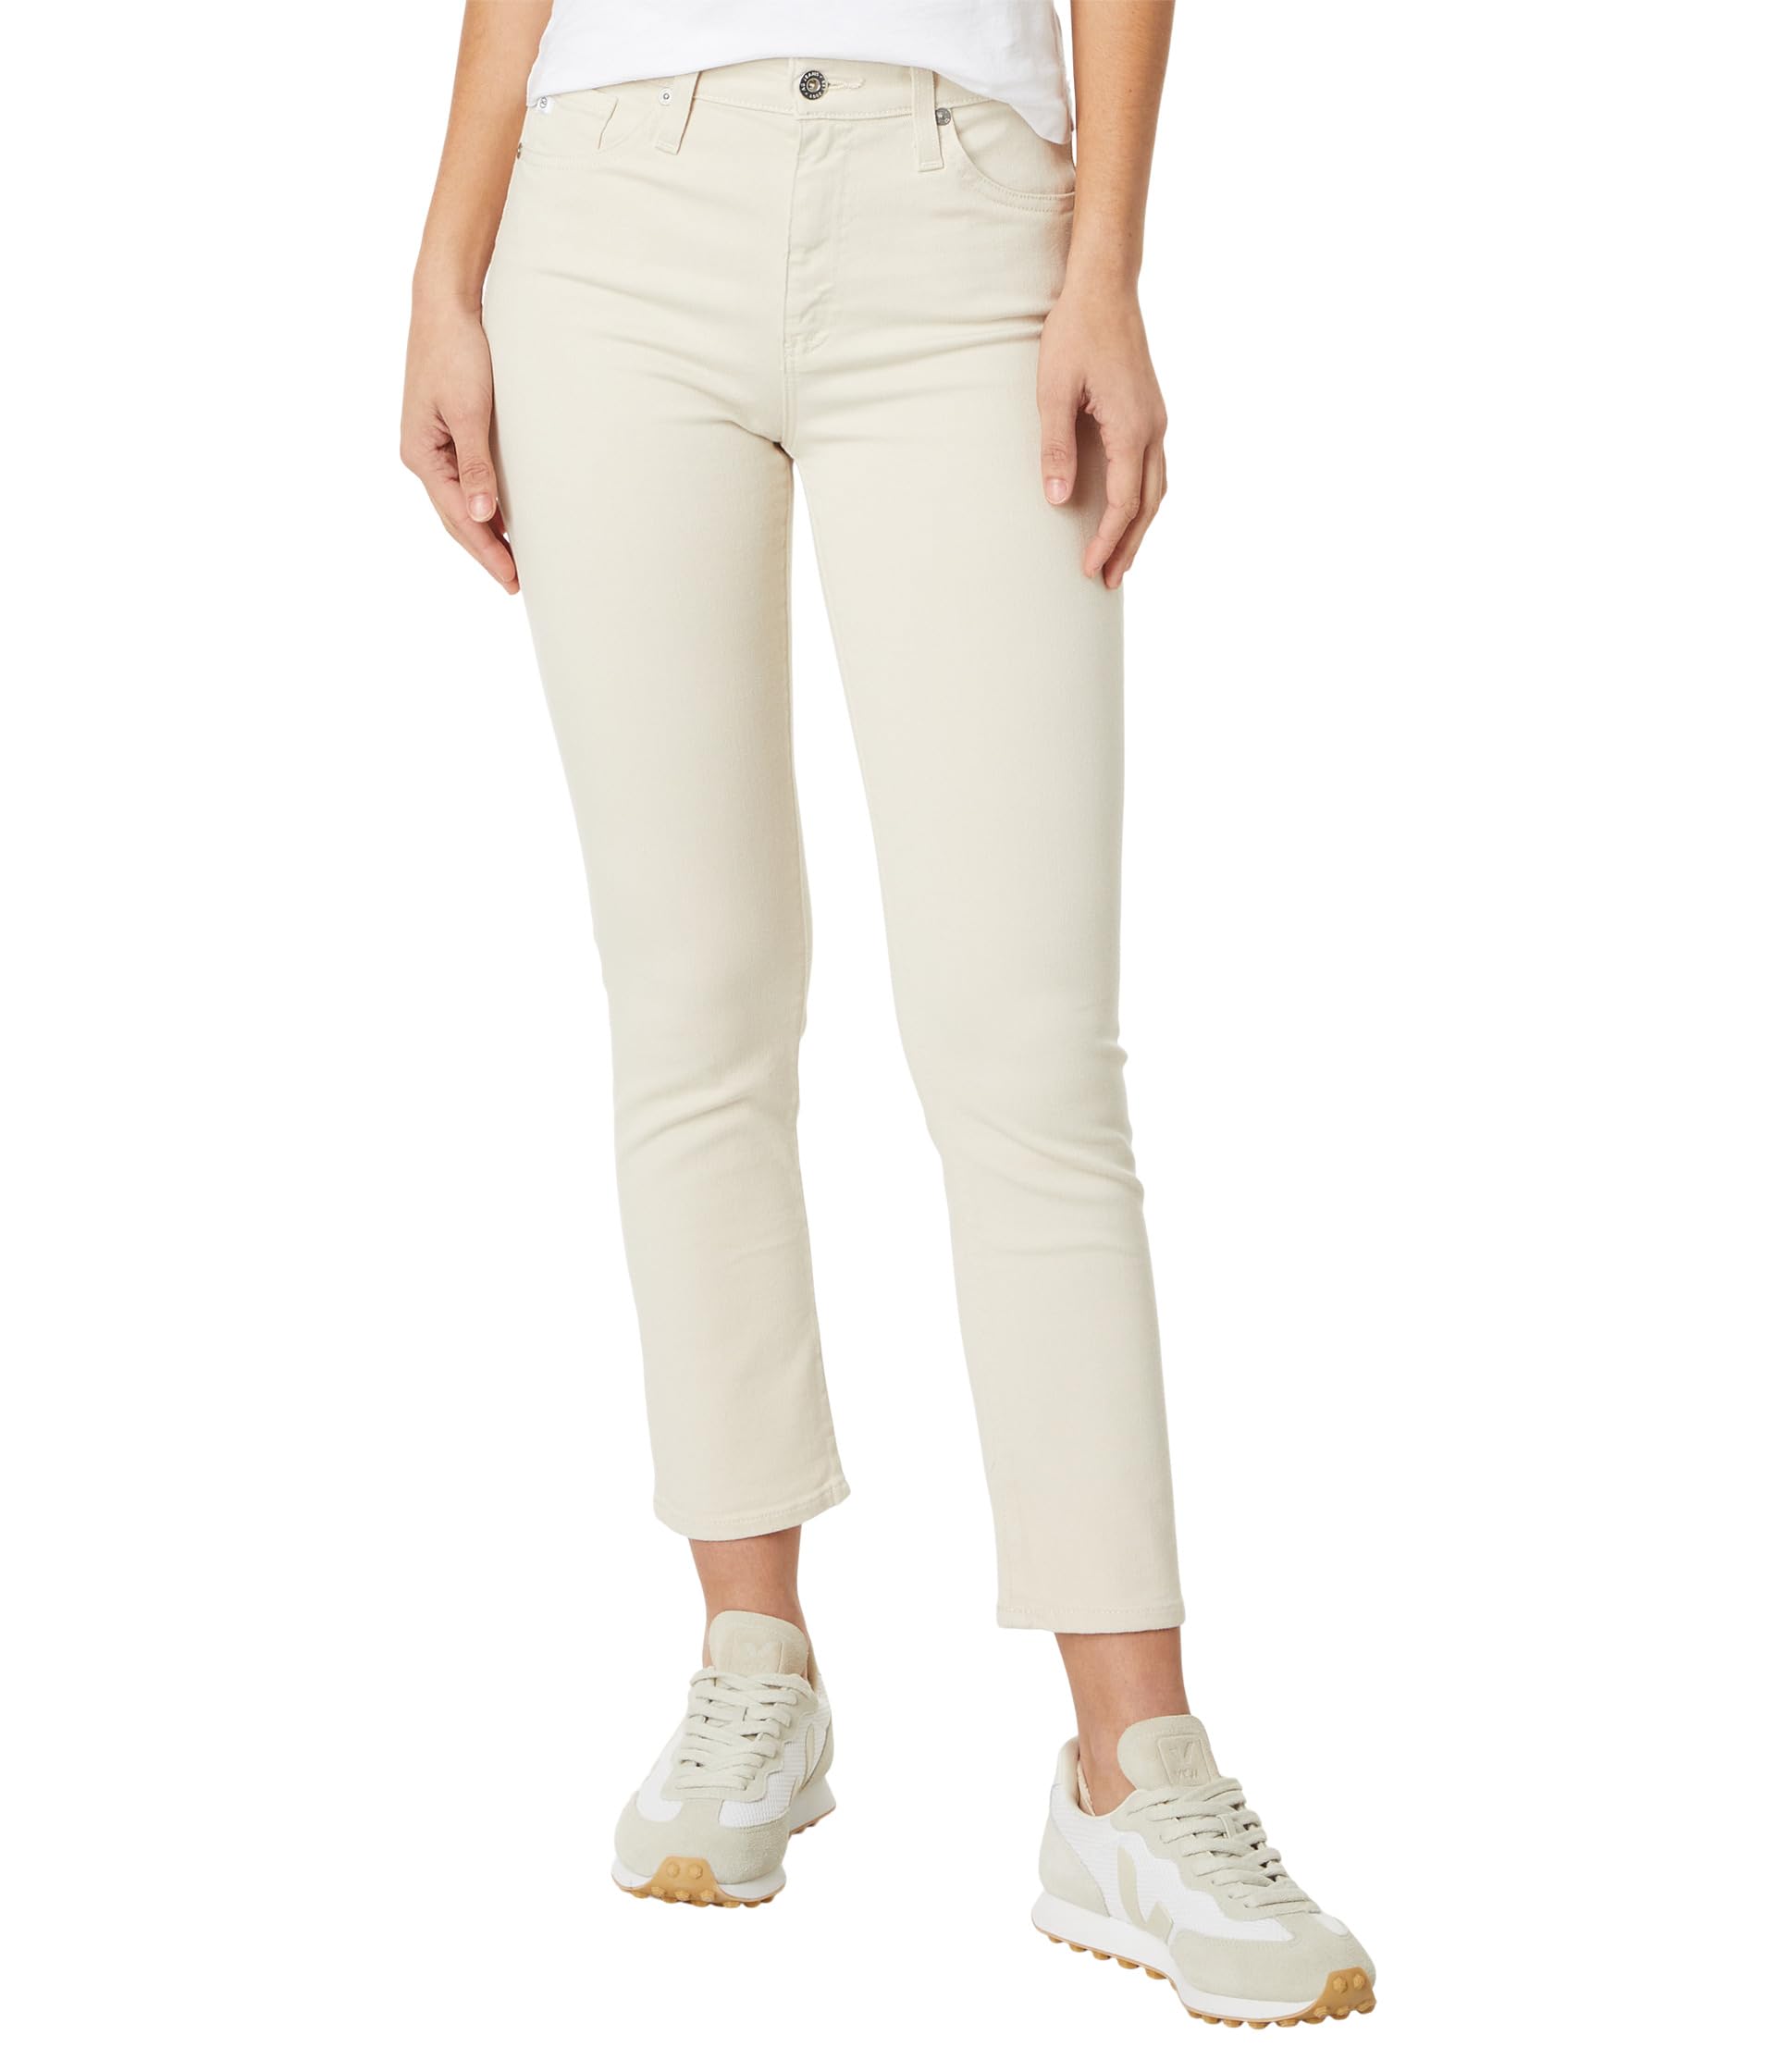 Узкие прямые короткие шорты Mari с высокой посадкой цвета опал AG Jeans